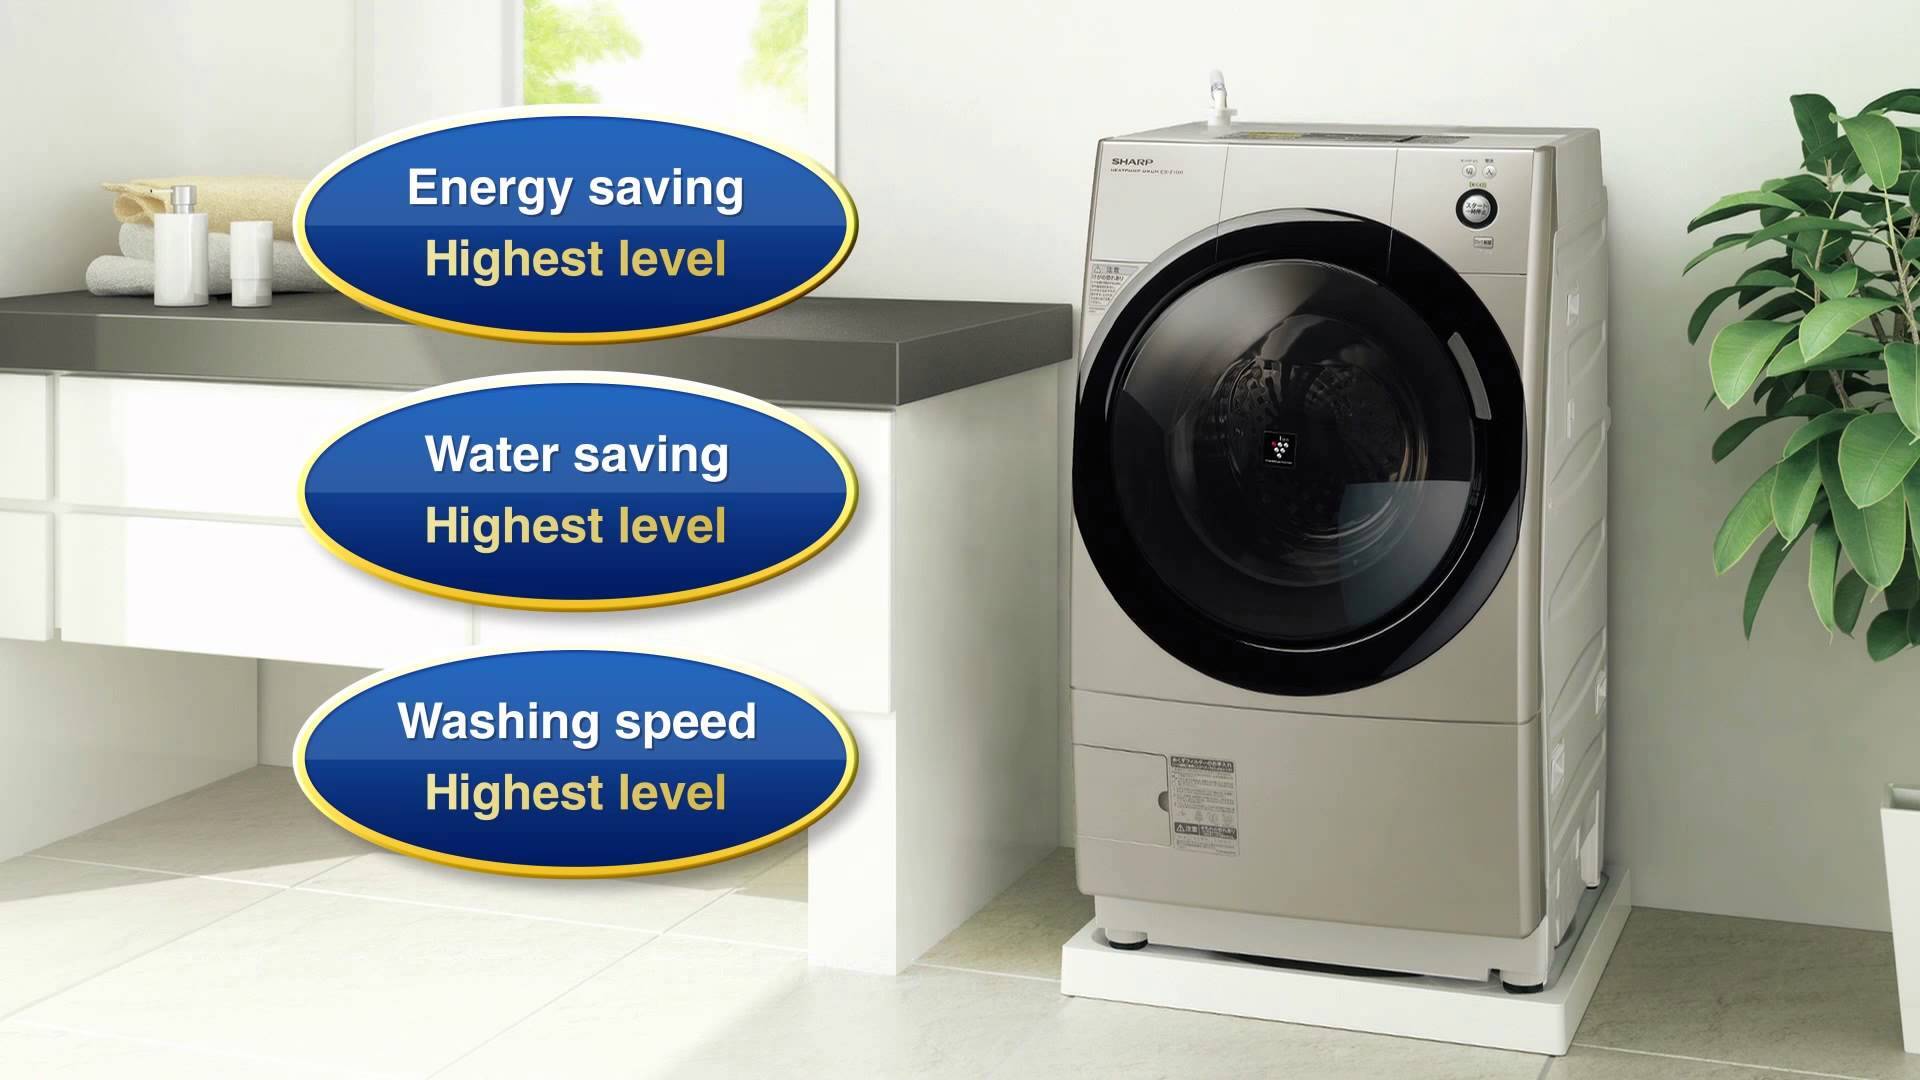 Tùy theo nhu cầu, khách hàng có thể lựa chọn máy giặt Sharp có khối lượng giặt khác nhau.